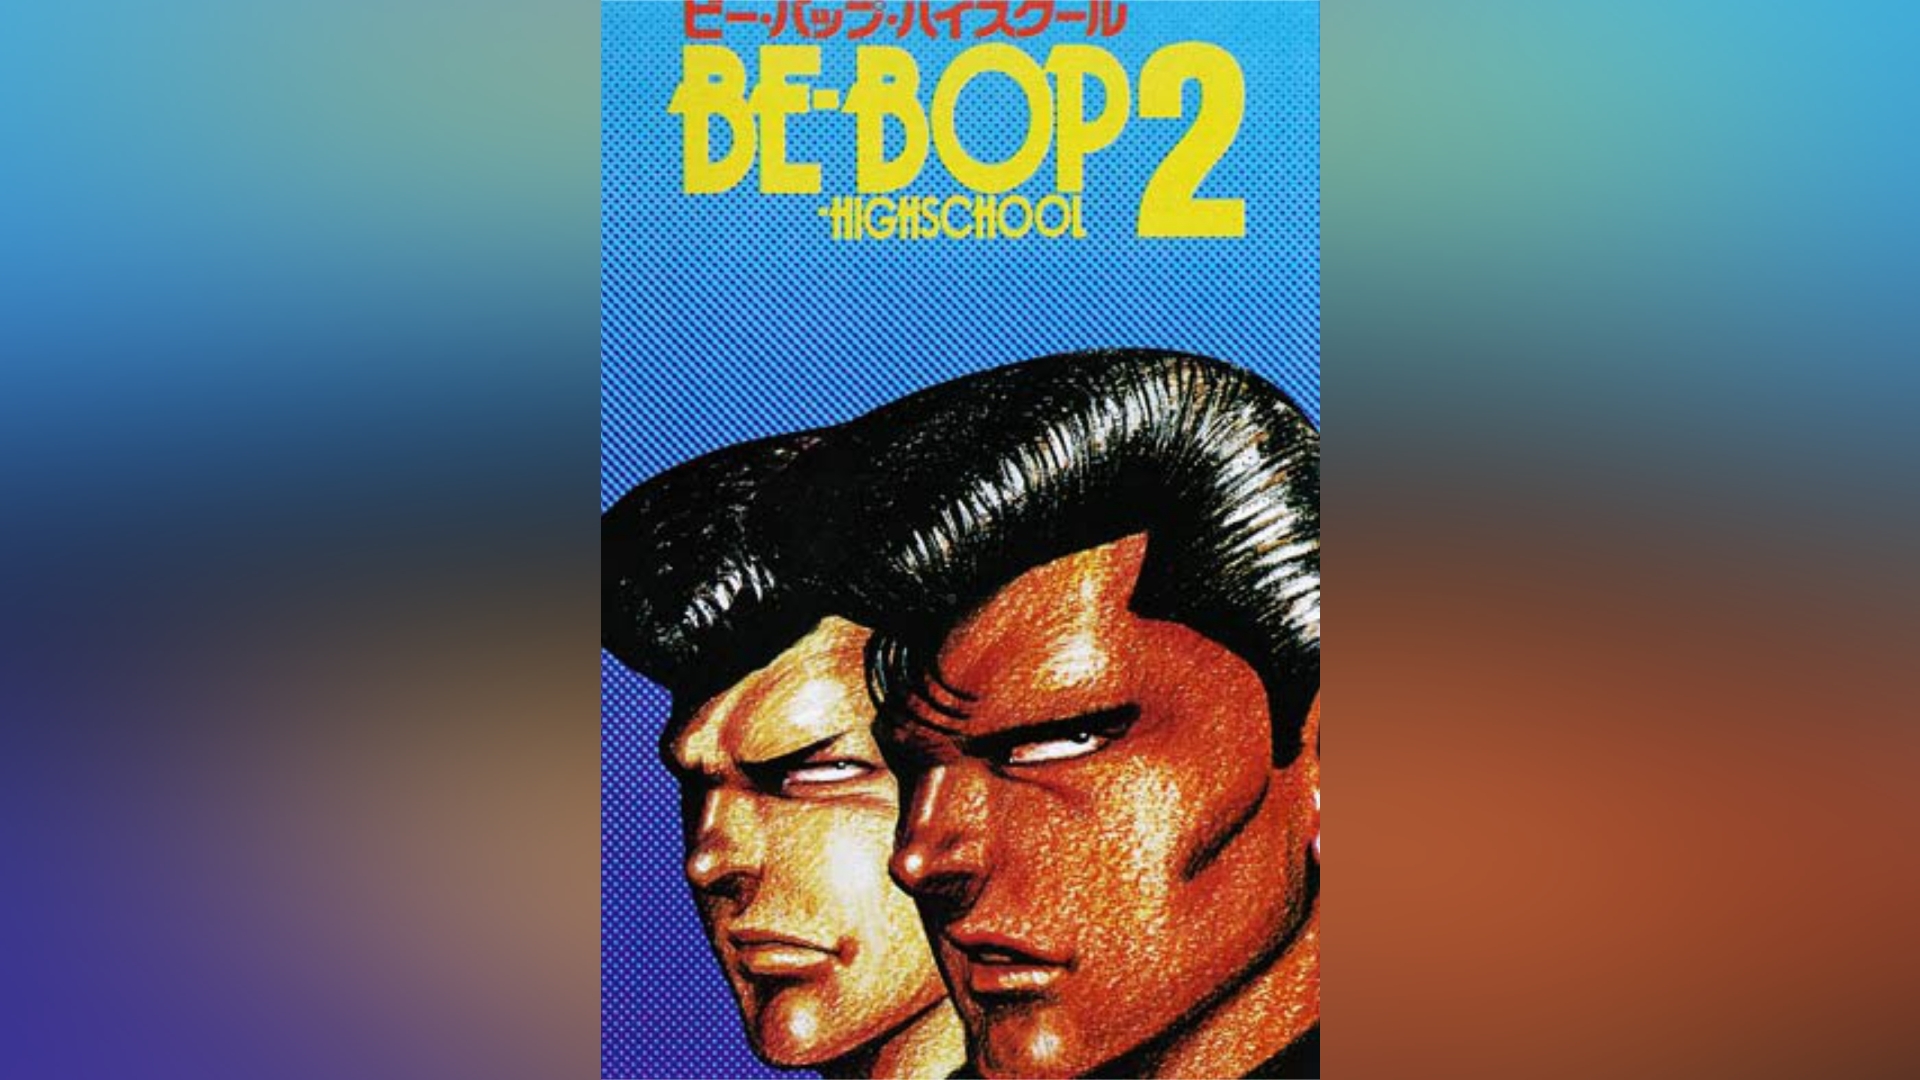 BE-BOP-HIGHSCHOOL ビー・バップ・ハイスクール コミック 全48巻 完結 